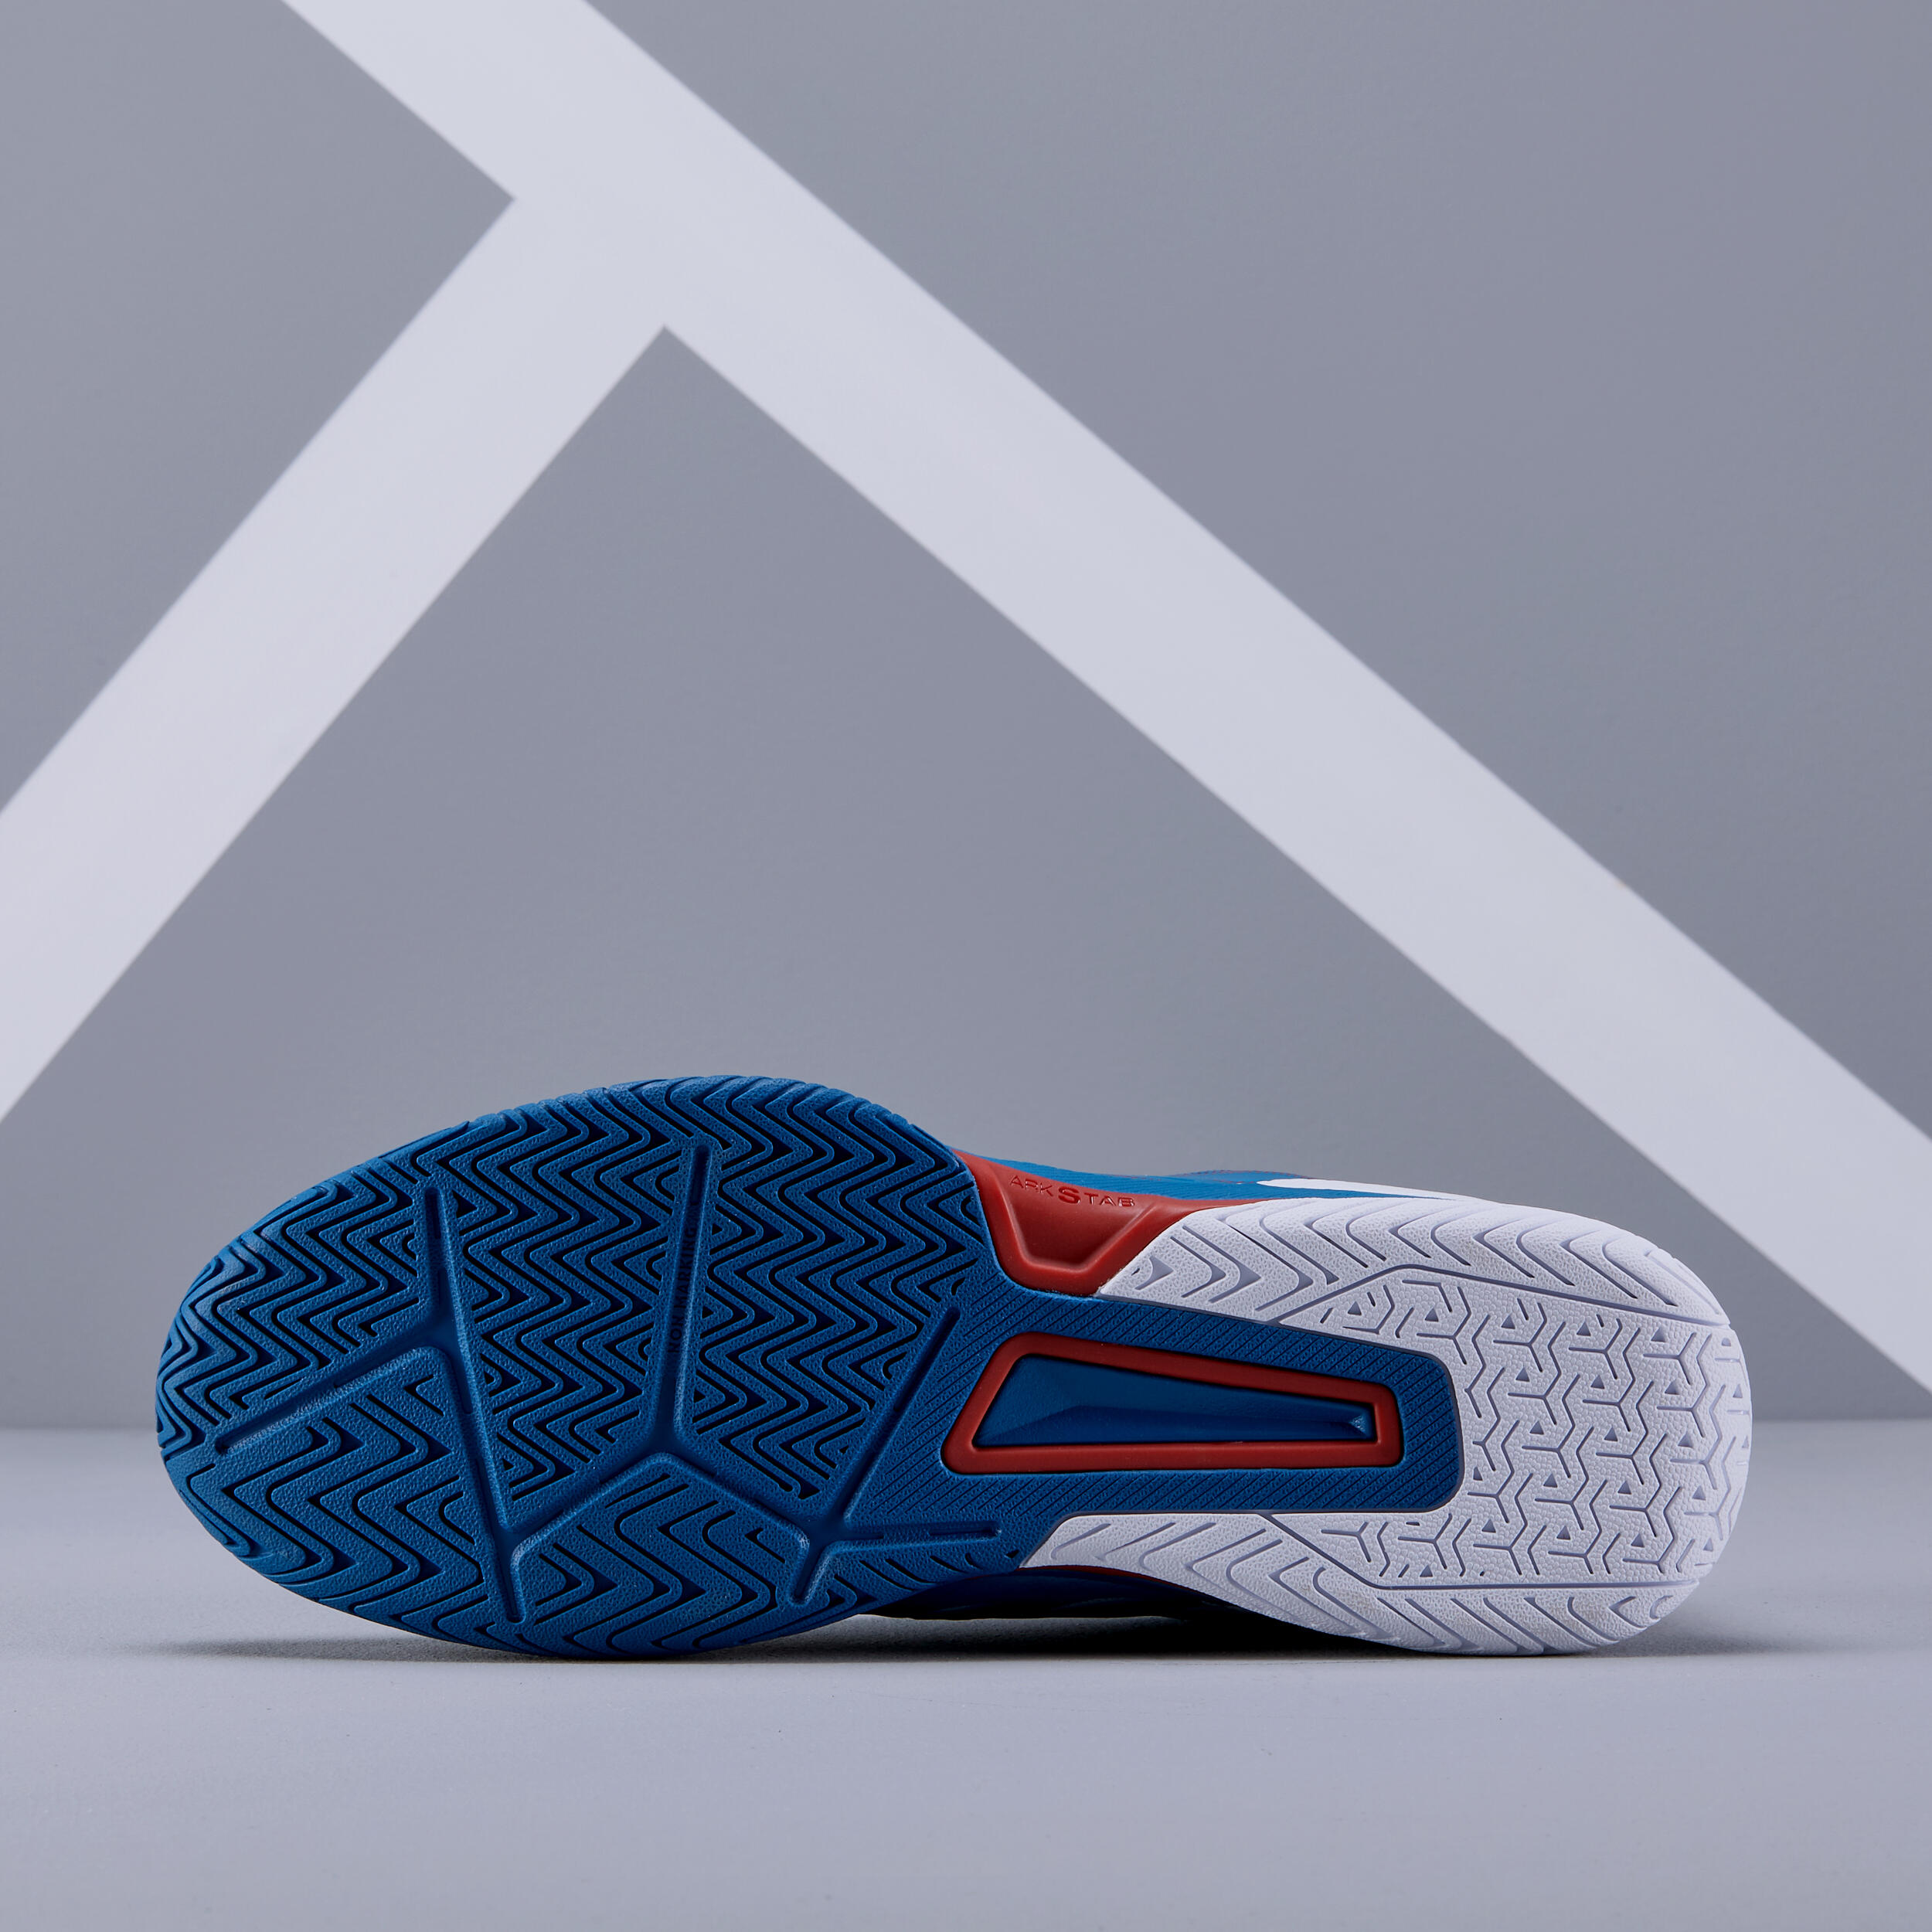 Chaussures de tennis homme - TS 560 bleu - ARTENGO